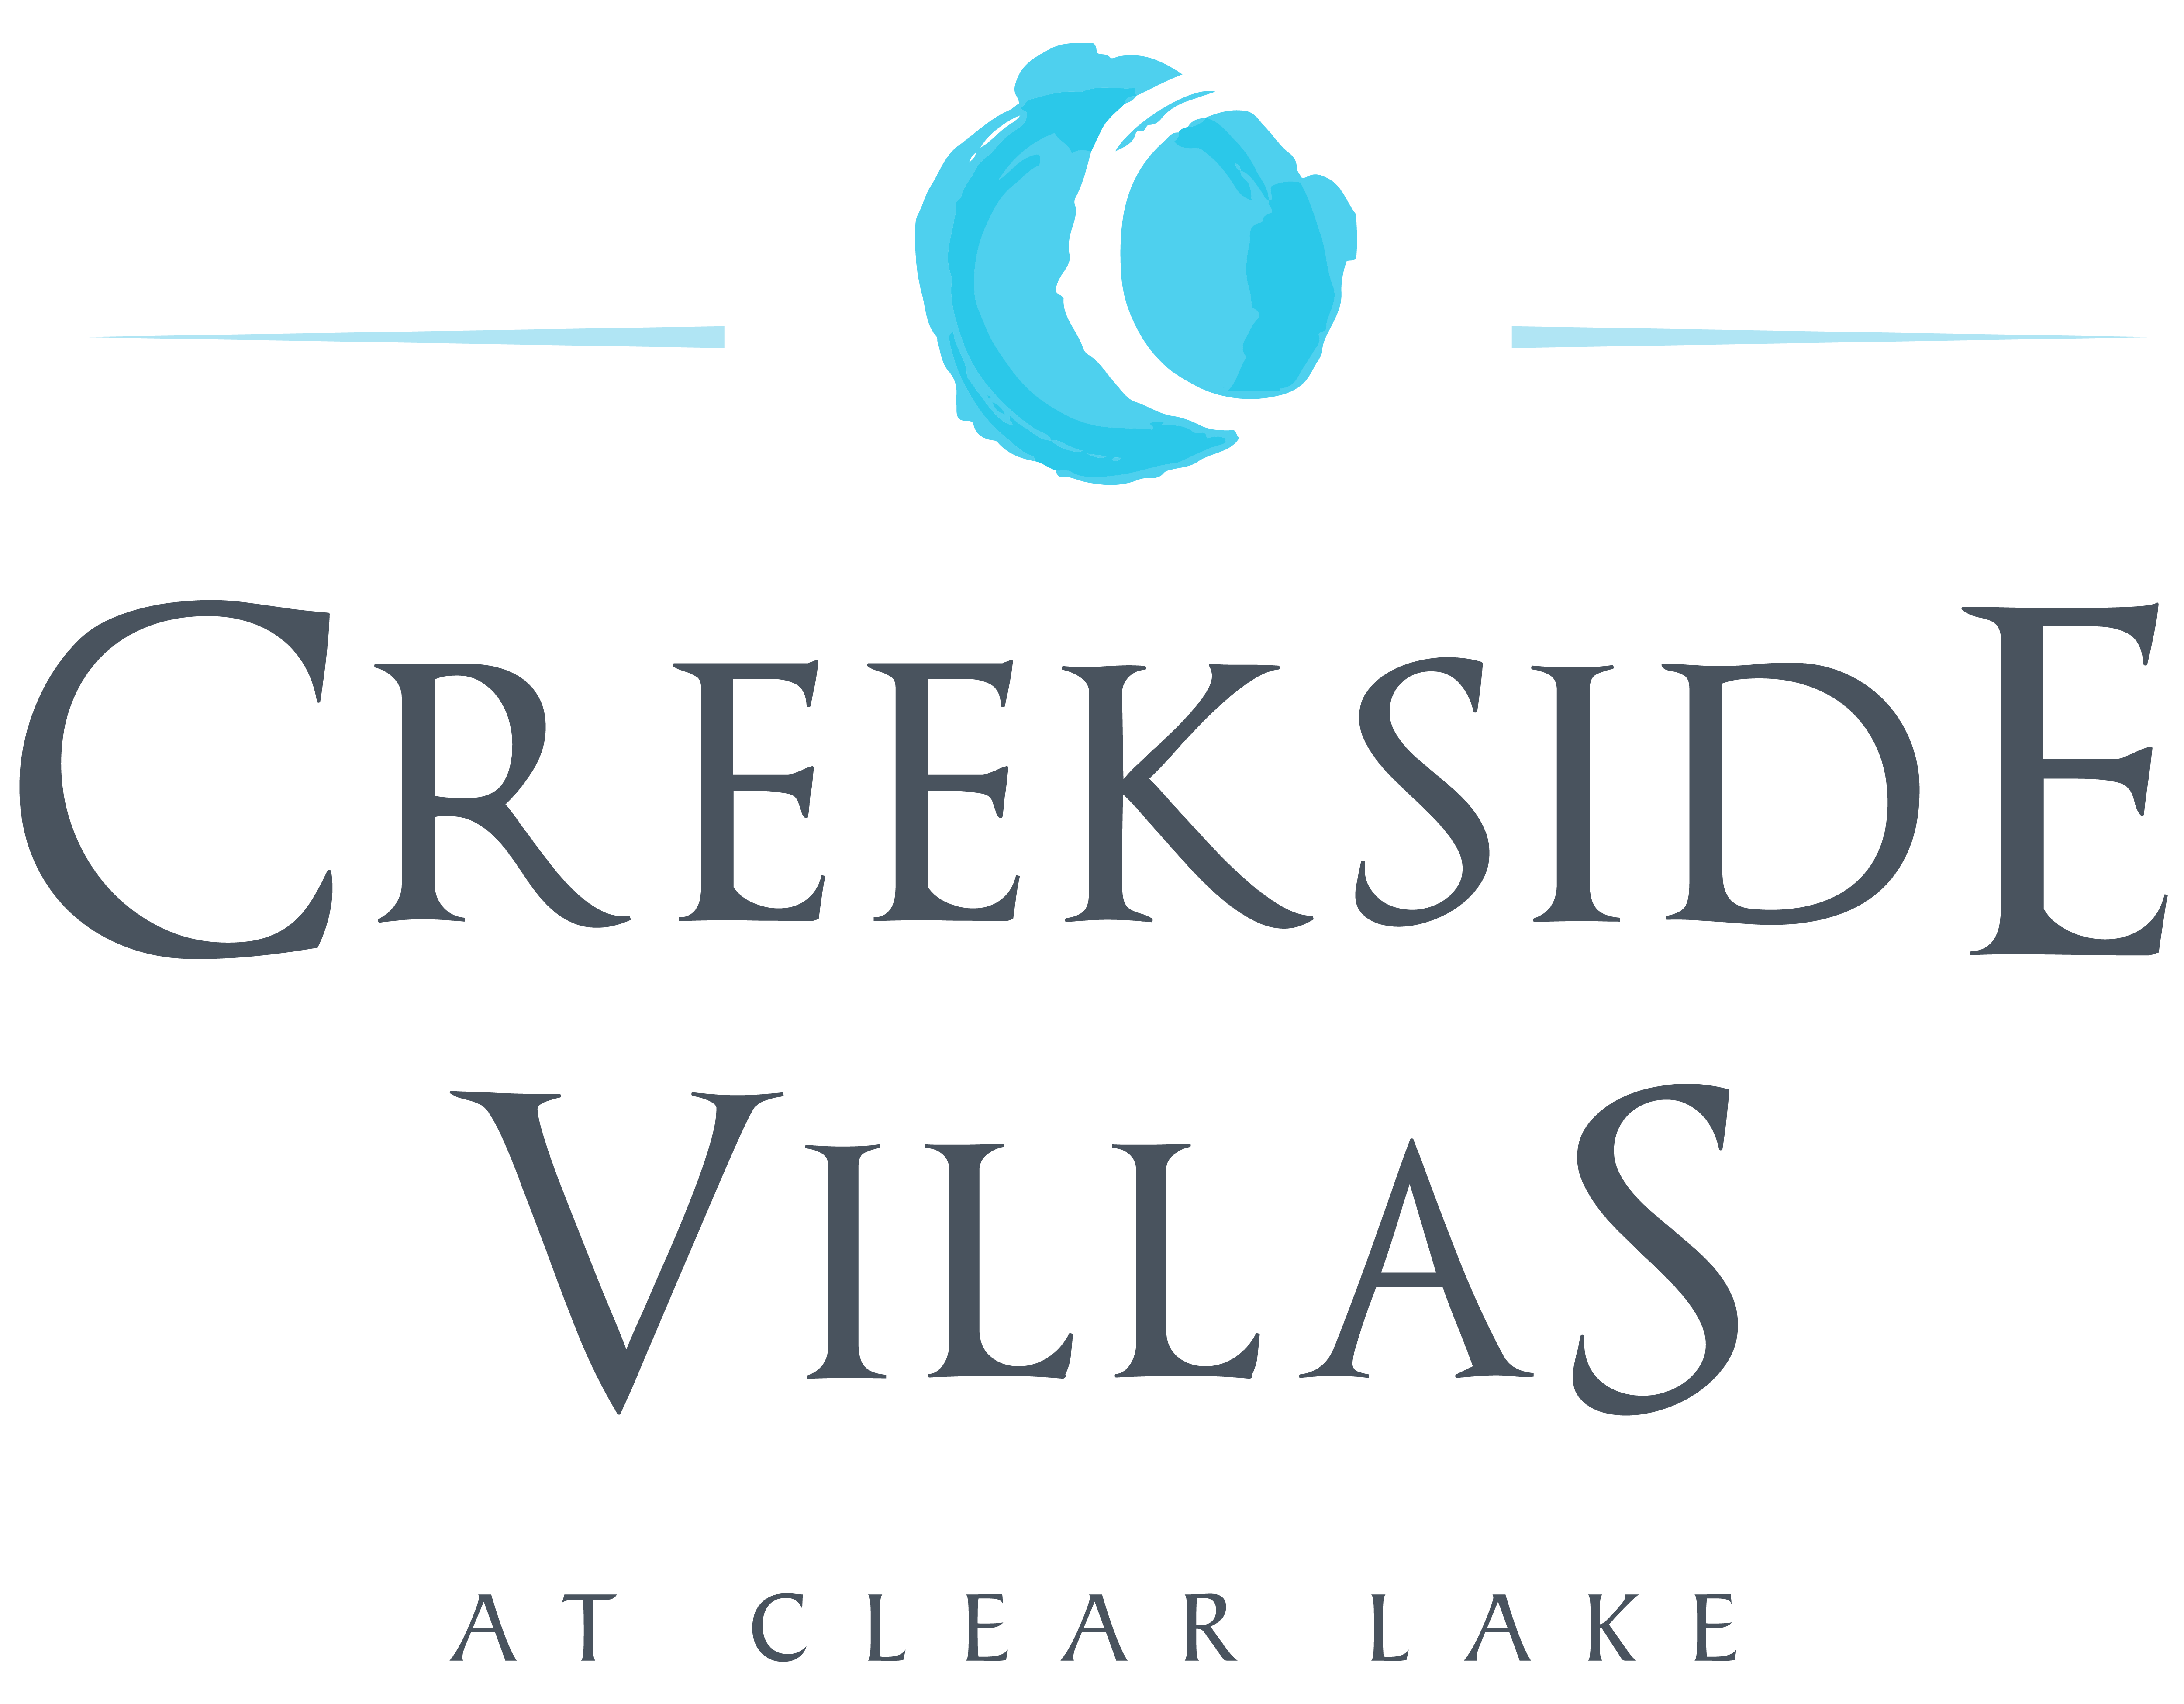 Creekside Villas at Clear Lake